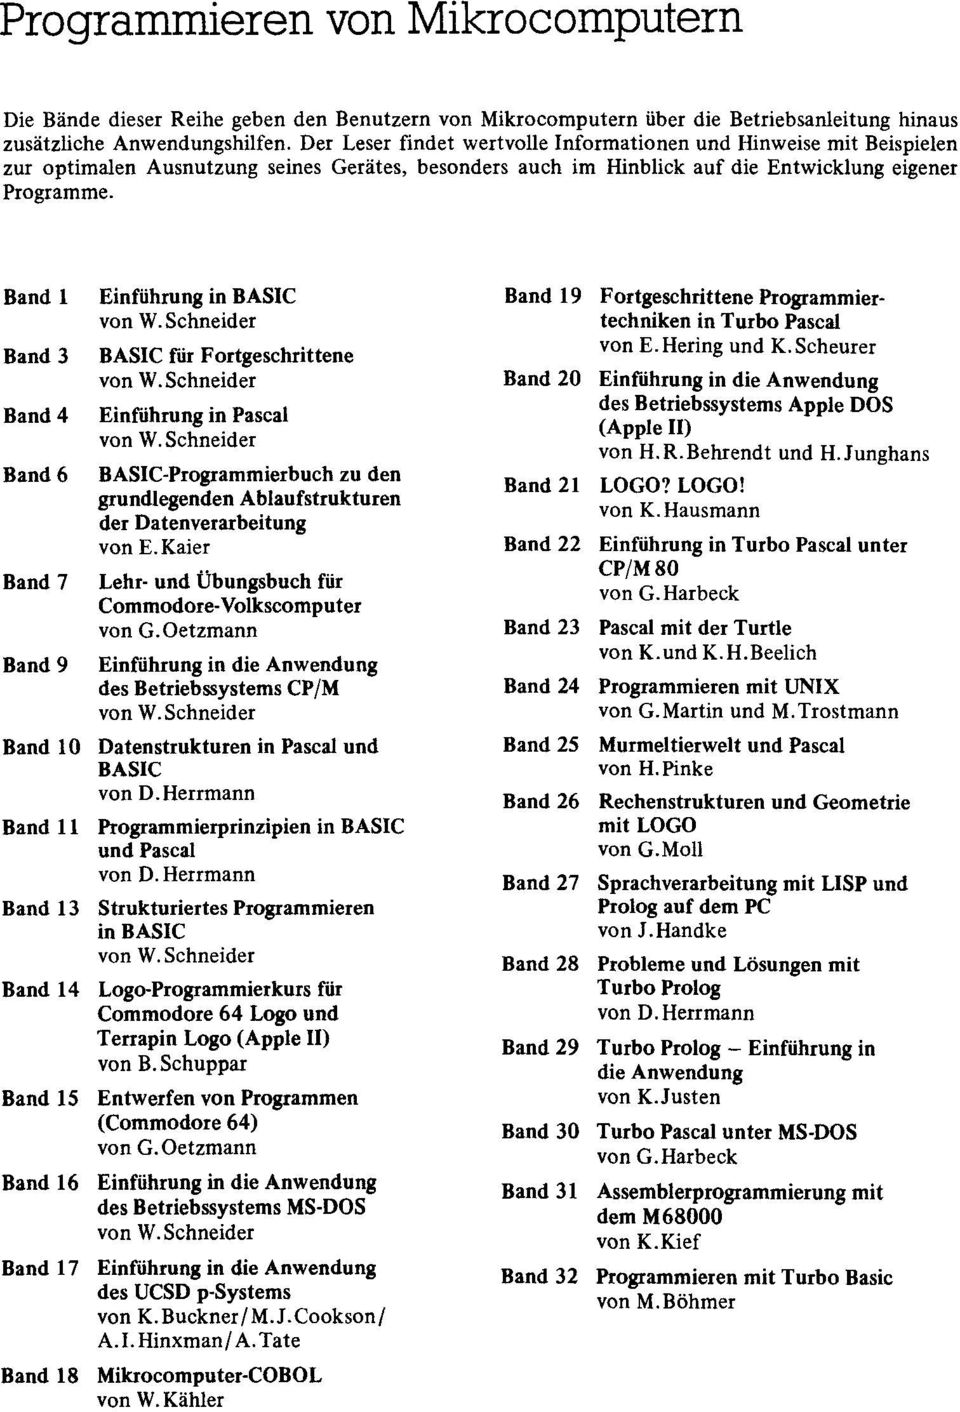 Band 1 Einfiihrung in BASIC Band 19 Fortgeschrittene Programmiervon W.Schneider techniken in Turbo Pascal Band 3 BASIC fur Fortgeschrittene von E.Hering und K.